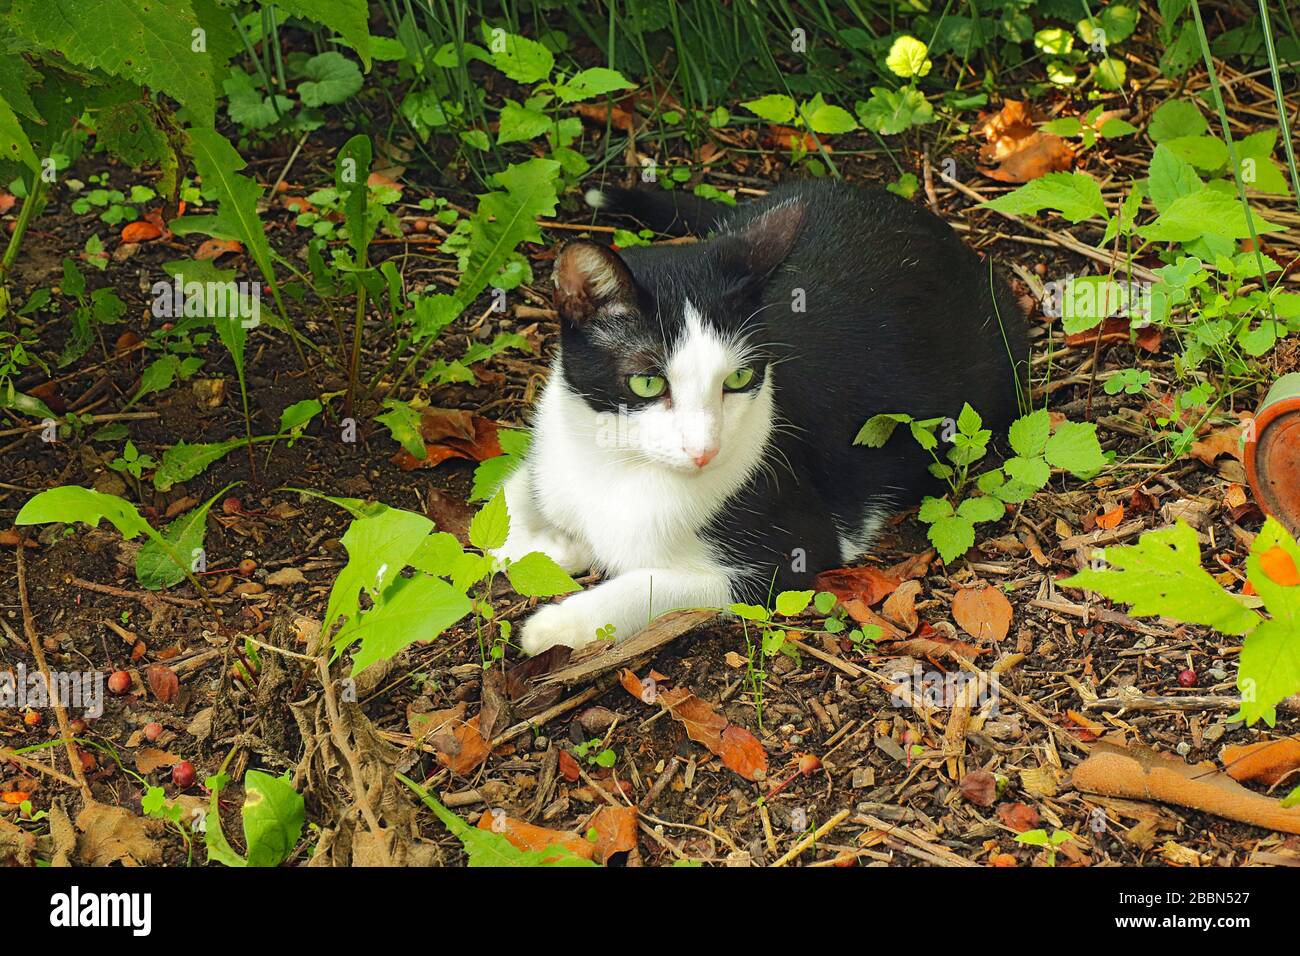 Un gato de esmoquin doméstico de ojos verdes, negro y blanco de shortair (Felis catus) fuera rodeado de vegetación Foto de stock